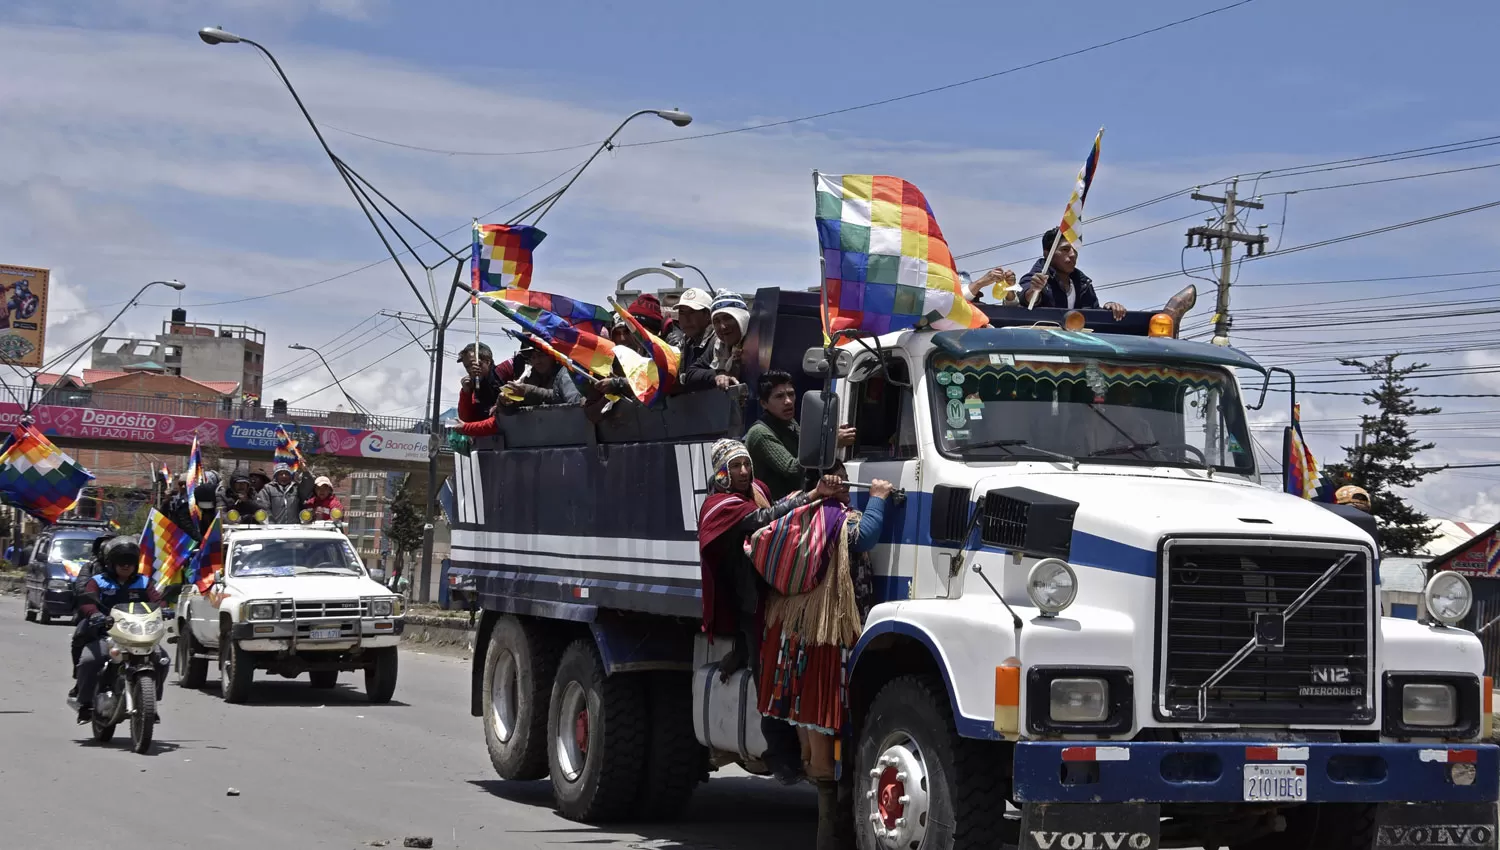 SIGUE EL CONFLICTO. Los indígenas, partidarios del ex presidente boliviano Evo Morales, viajan en camiones desde El Alto a La Paz para protestar contra el gobierno interino.